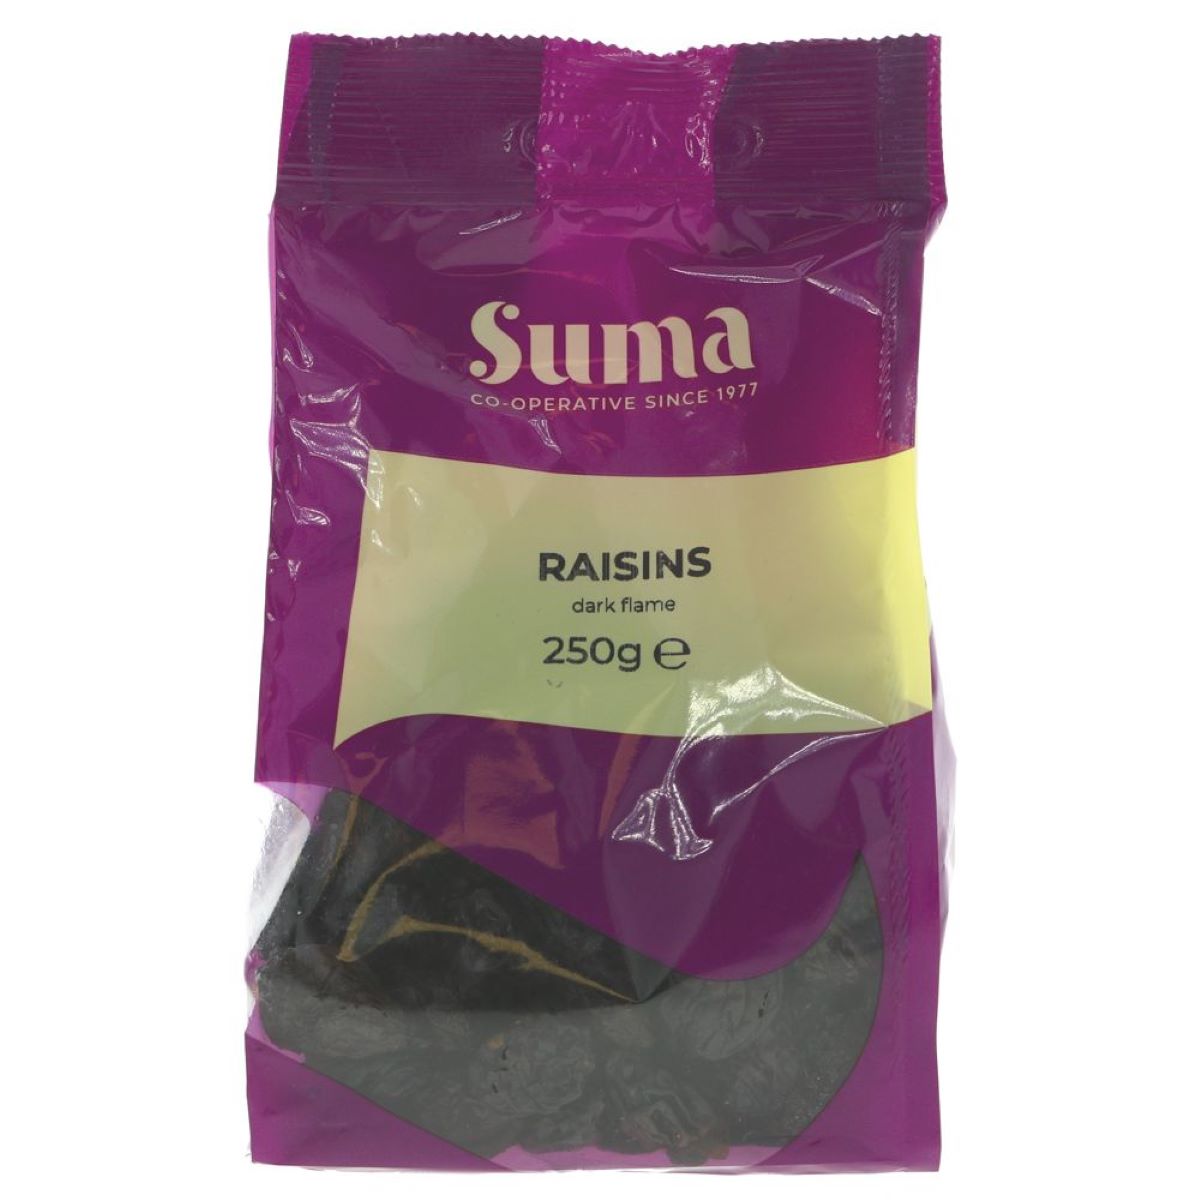 Suma Raisins 250g